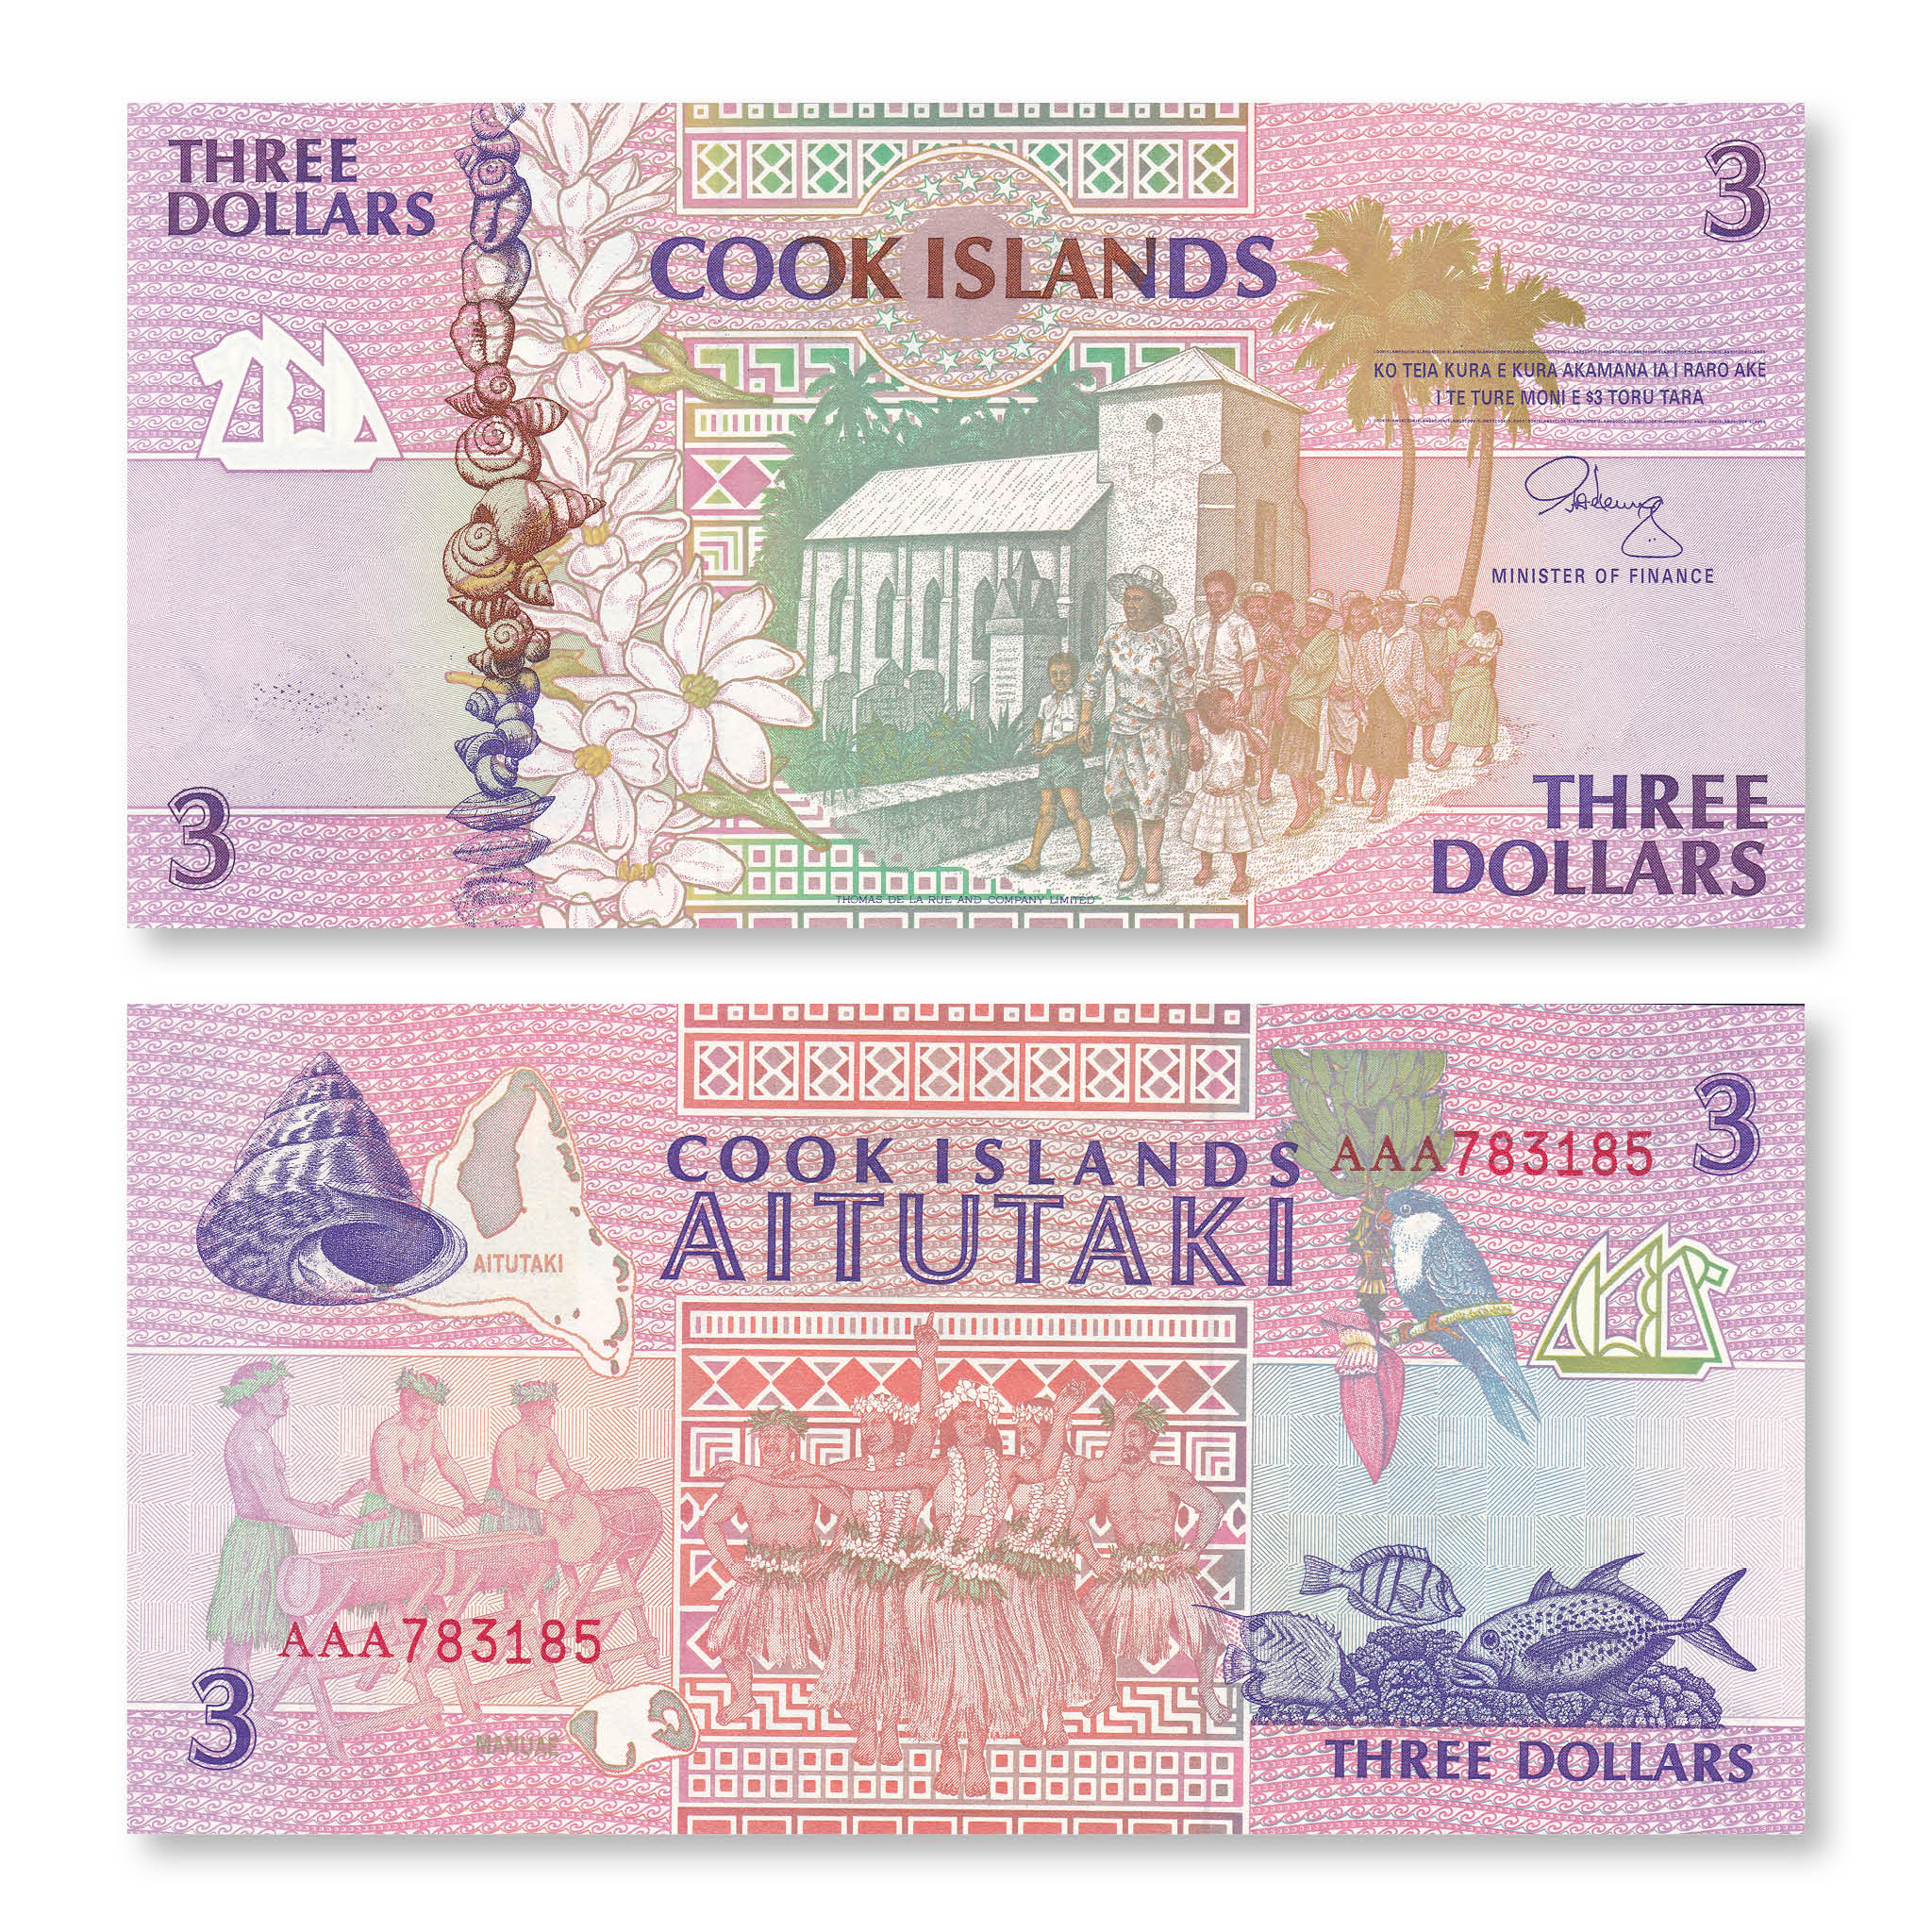 Cook Islands 3 Dollars, 1992, B107a, P7a, UNC - Robert's World Money - World Banknotes